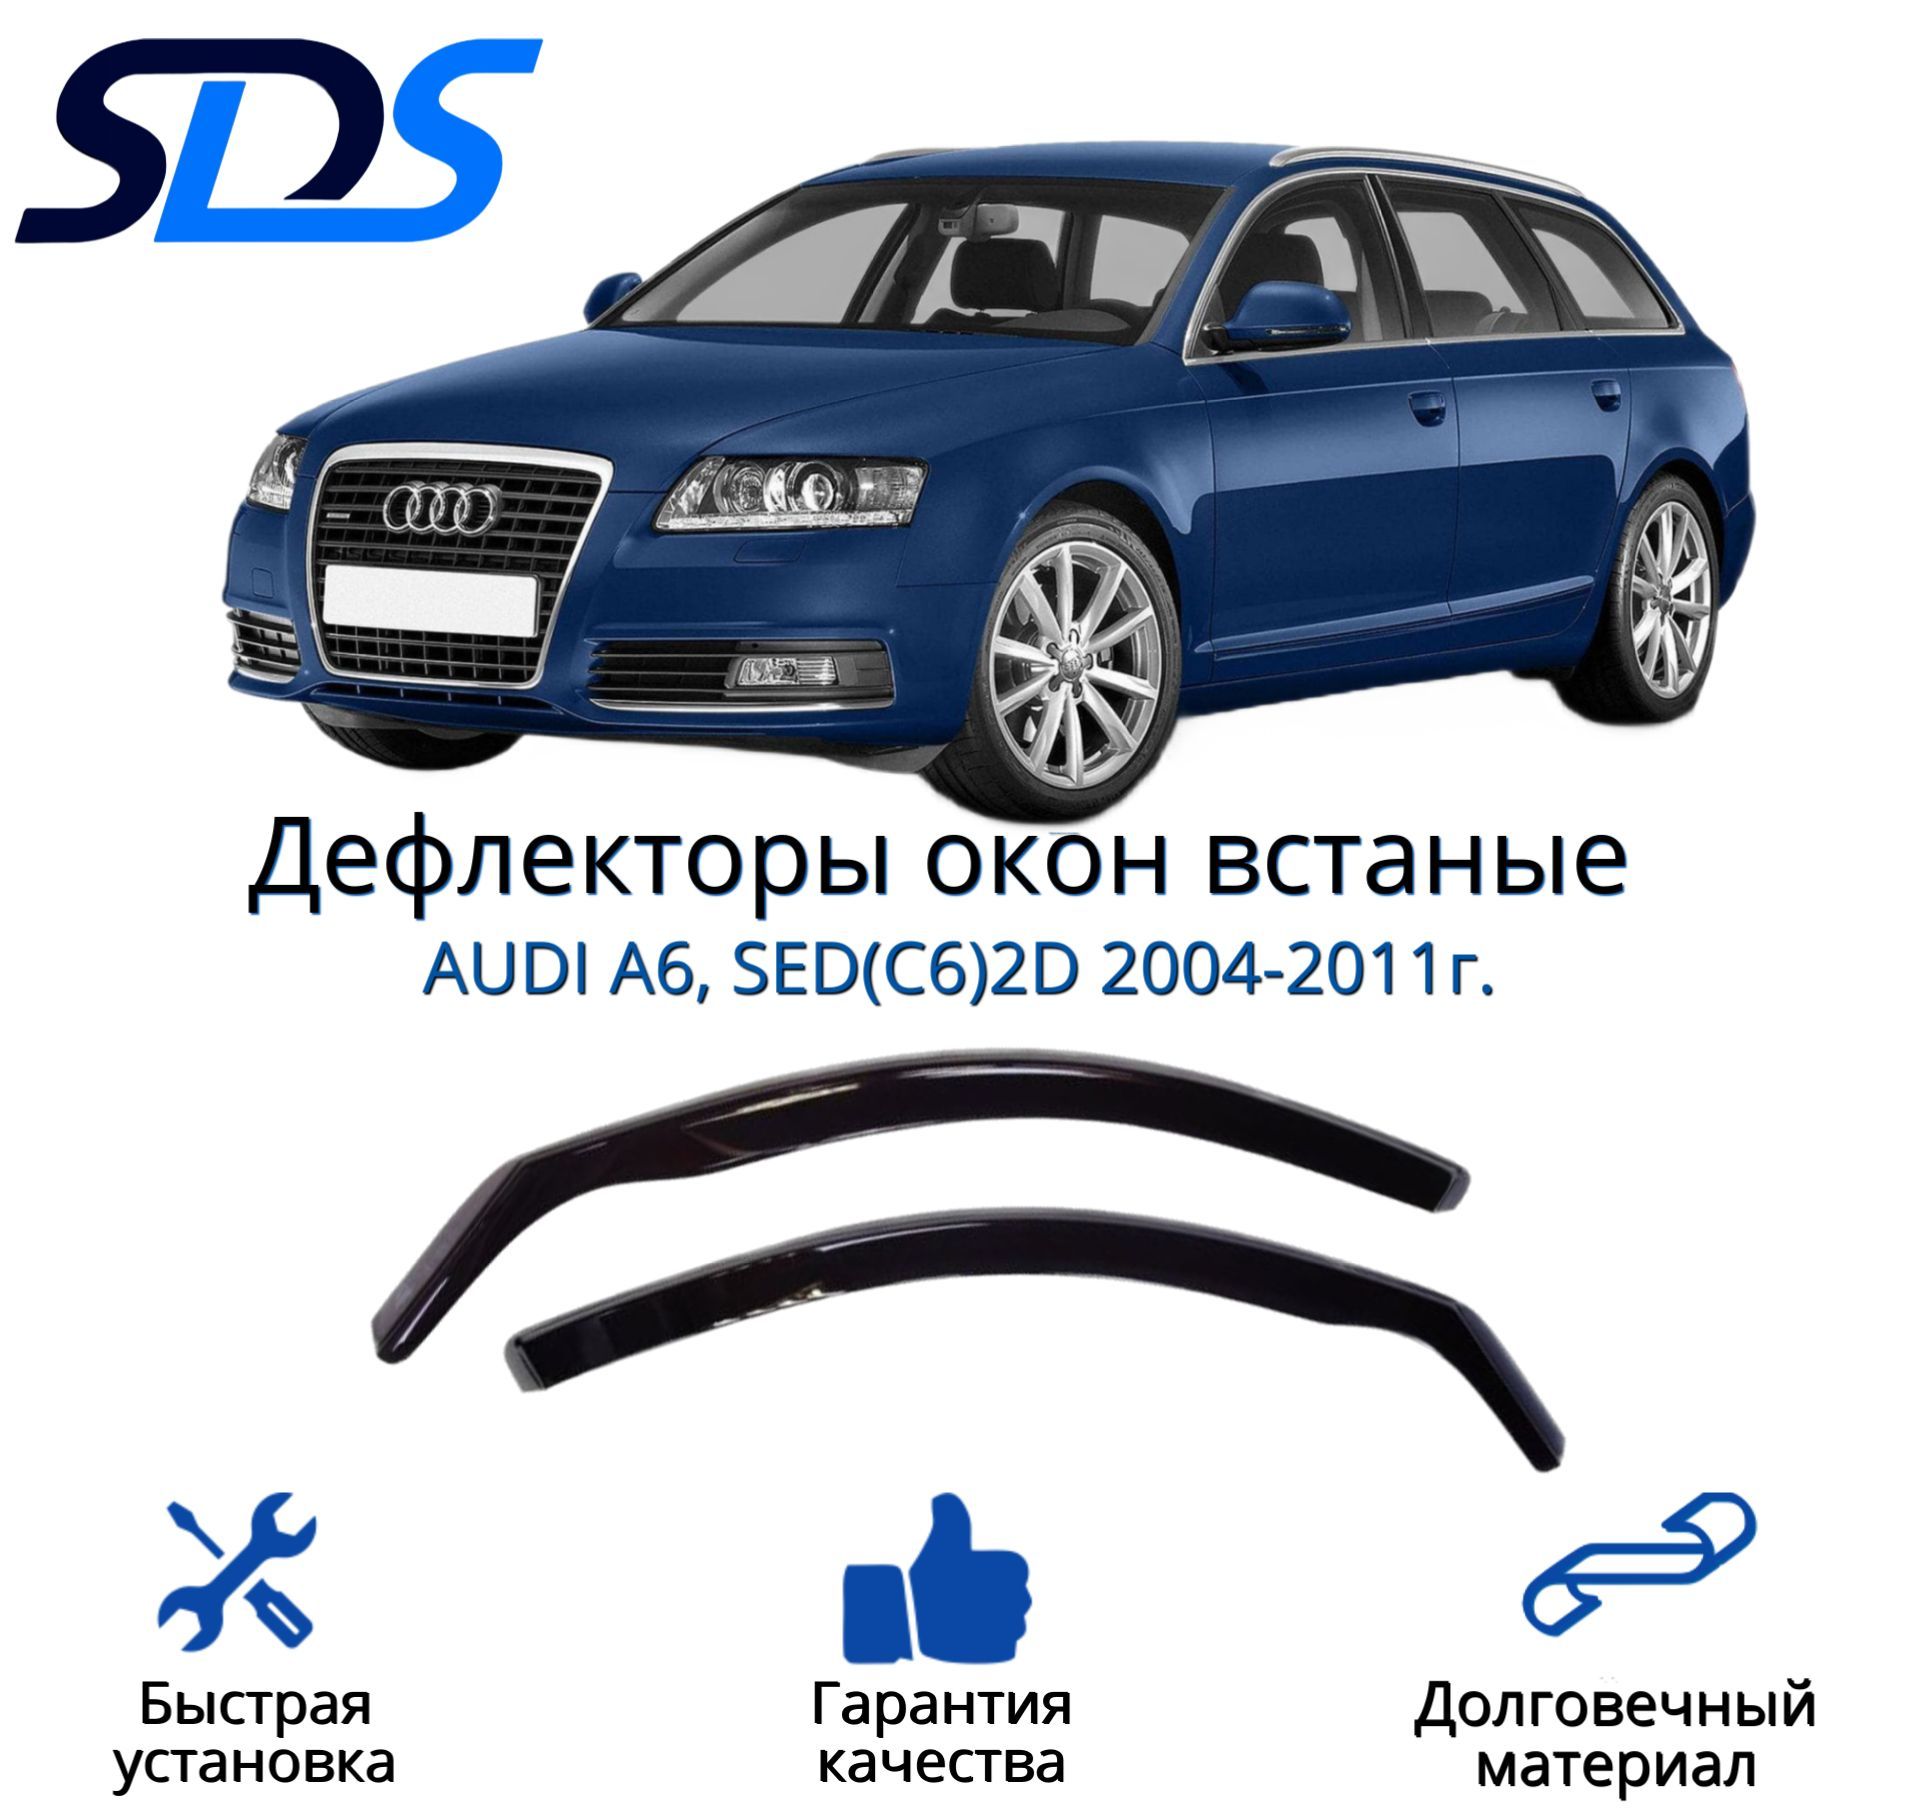 Дефлекторы окон, SDS, вставные передние для AUDI A6, SED(C6)2D 2004-2011,2 шт